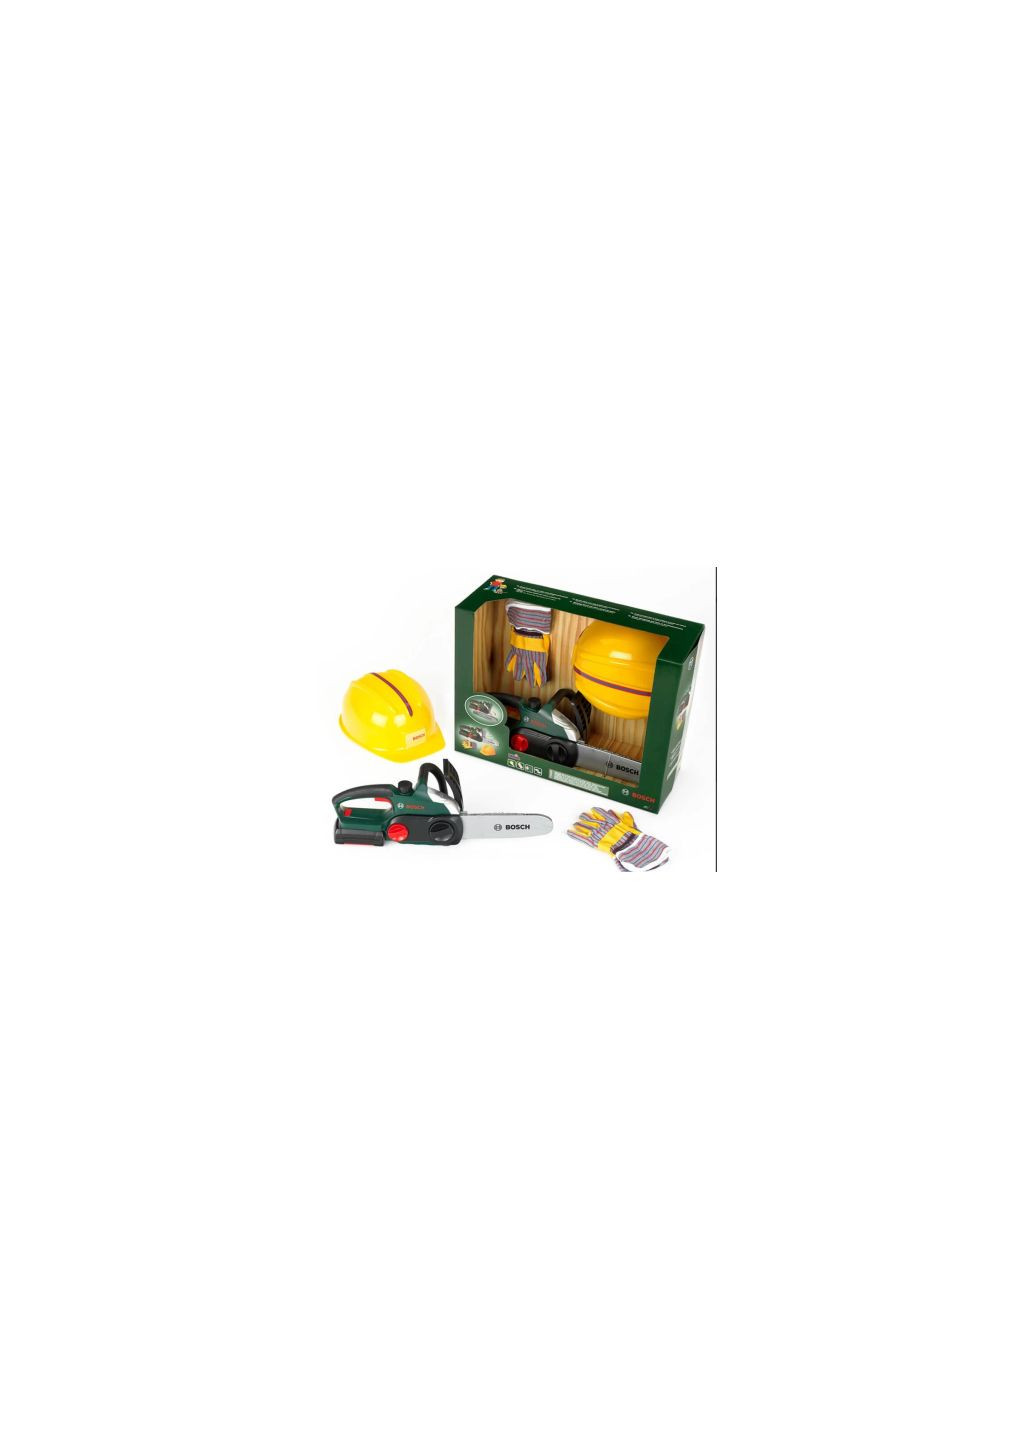 Игровой набор Набор мастера: Цепная пила, шлем, перчатки (8456) Bosch набір майстра ланцюгова пила, шлем, рукавички (275099266)